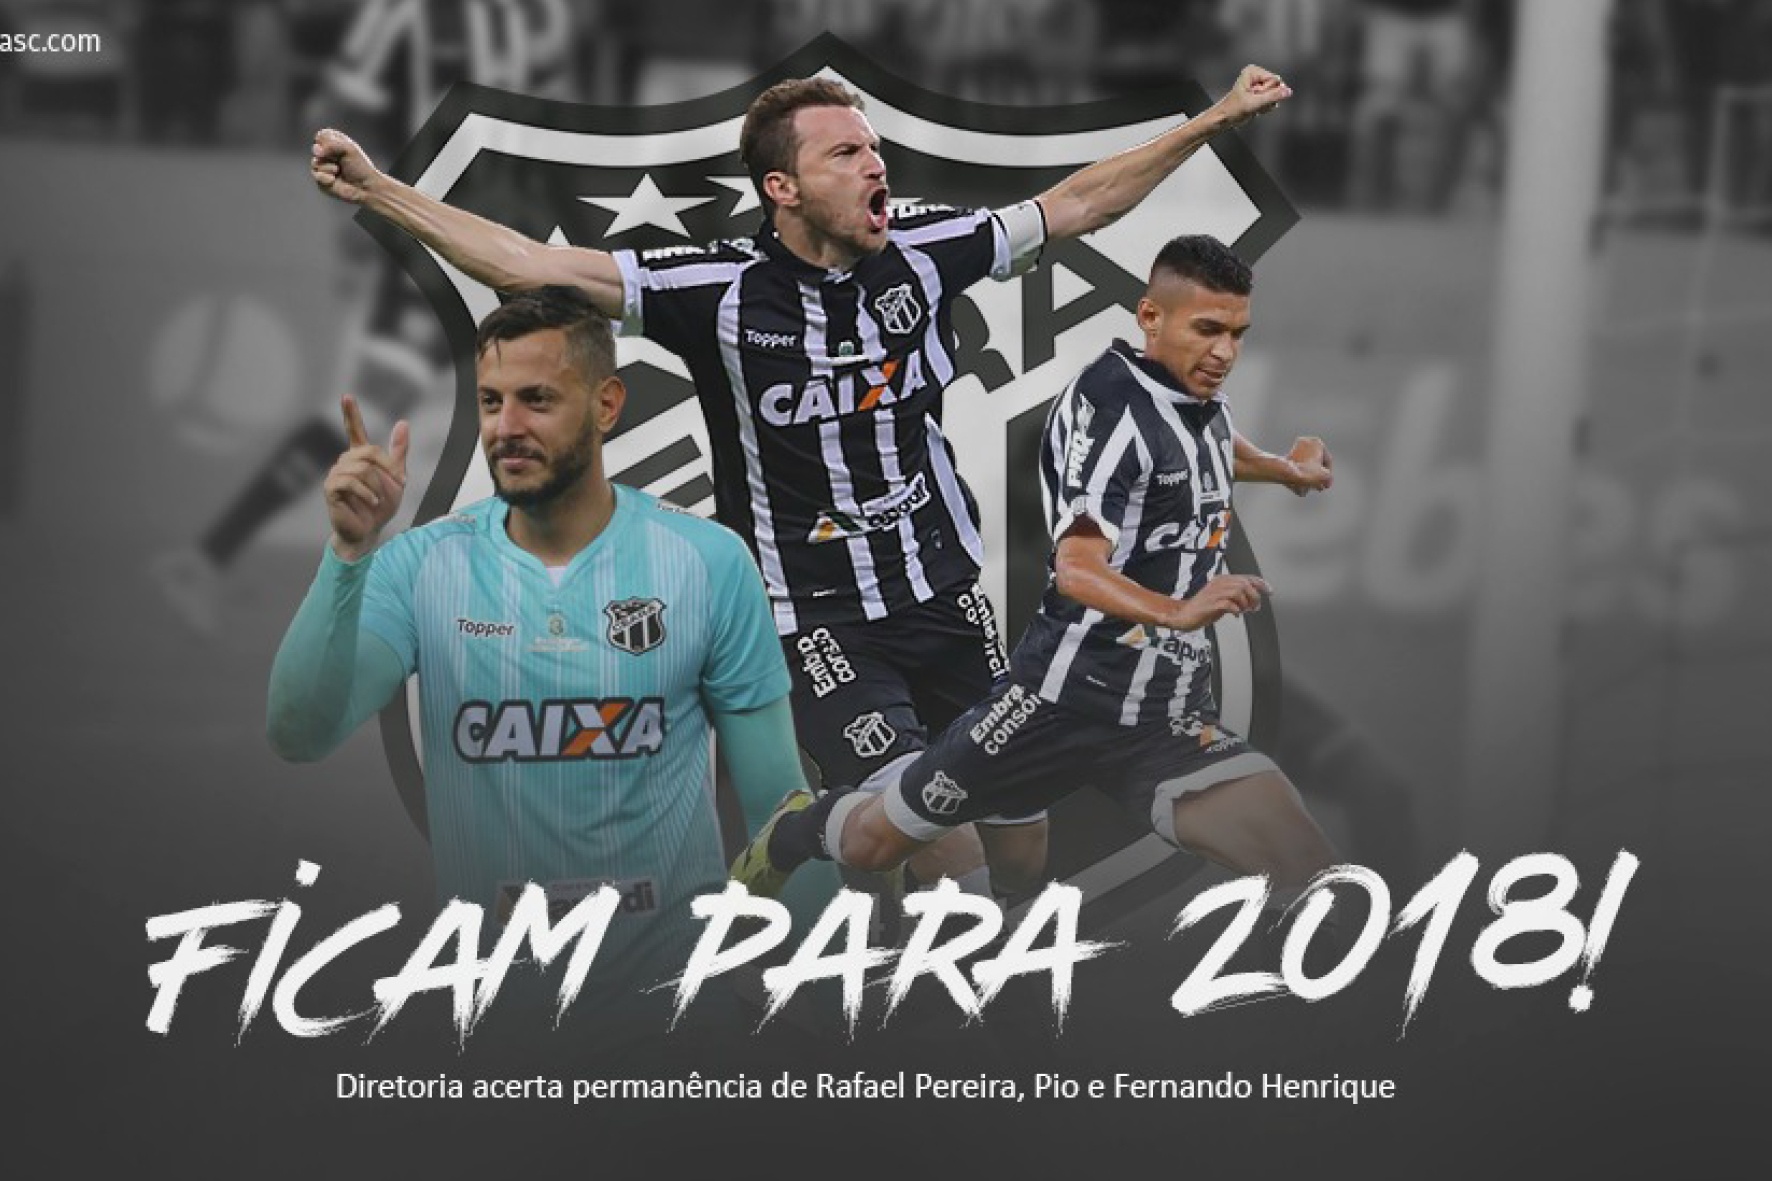 Ficam para 2018! Diretoria acerta permanência de Rafael Pereira, Pio e Fernando Henrique